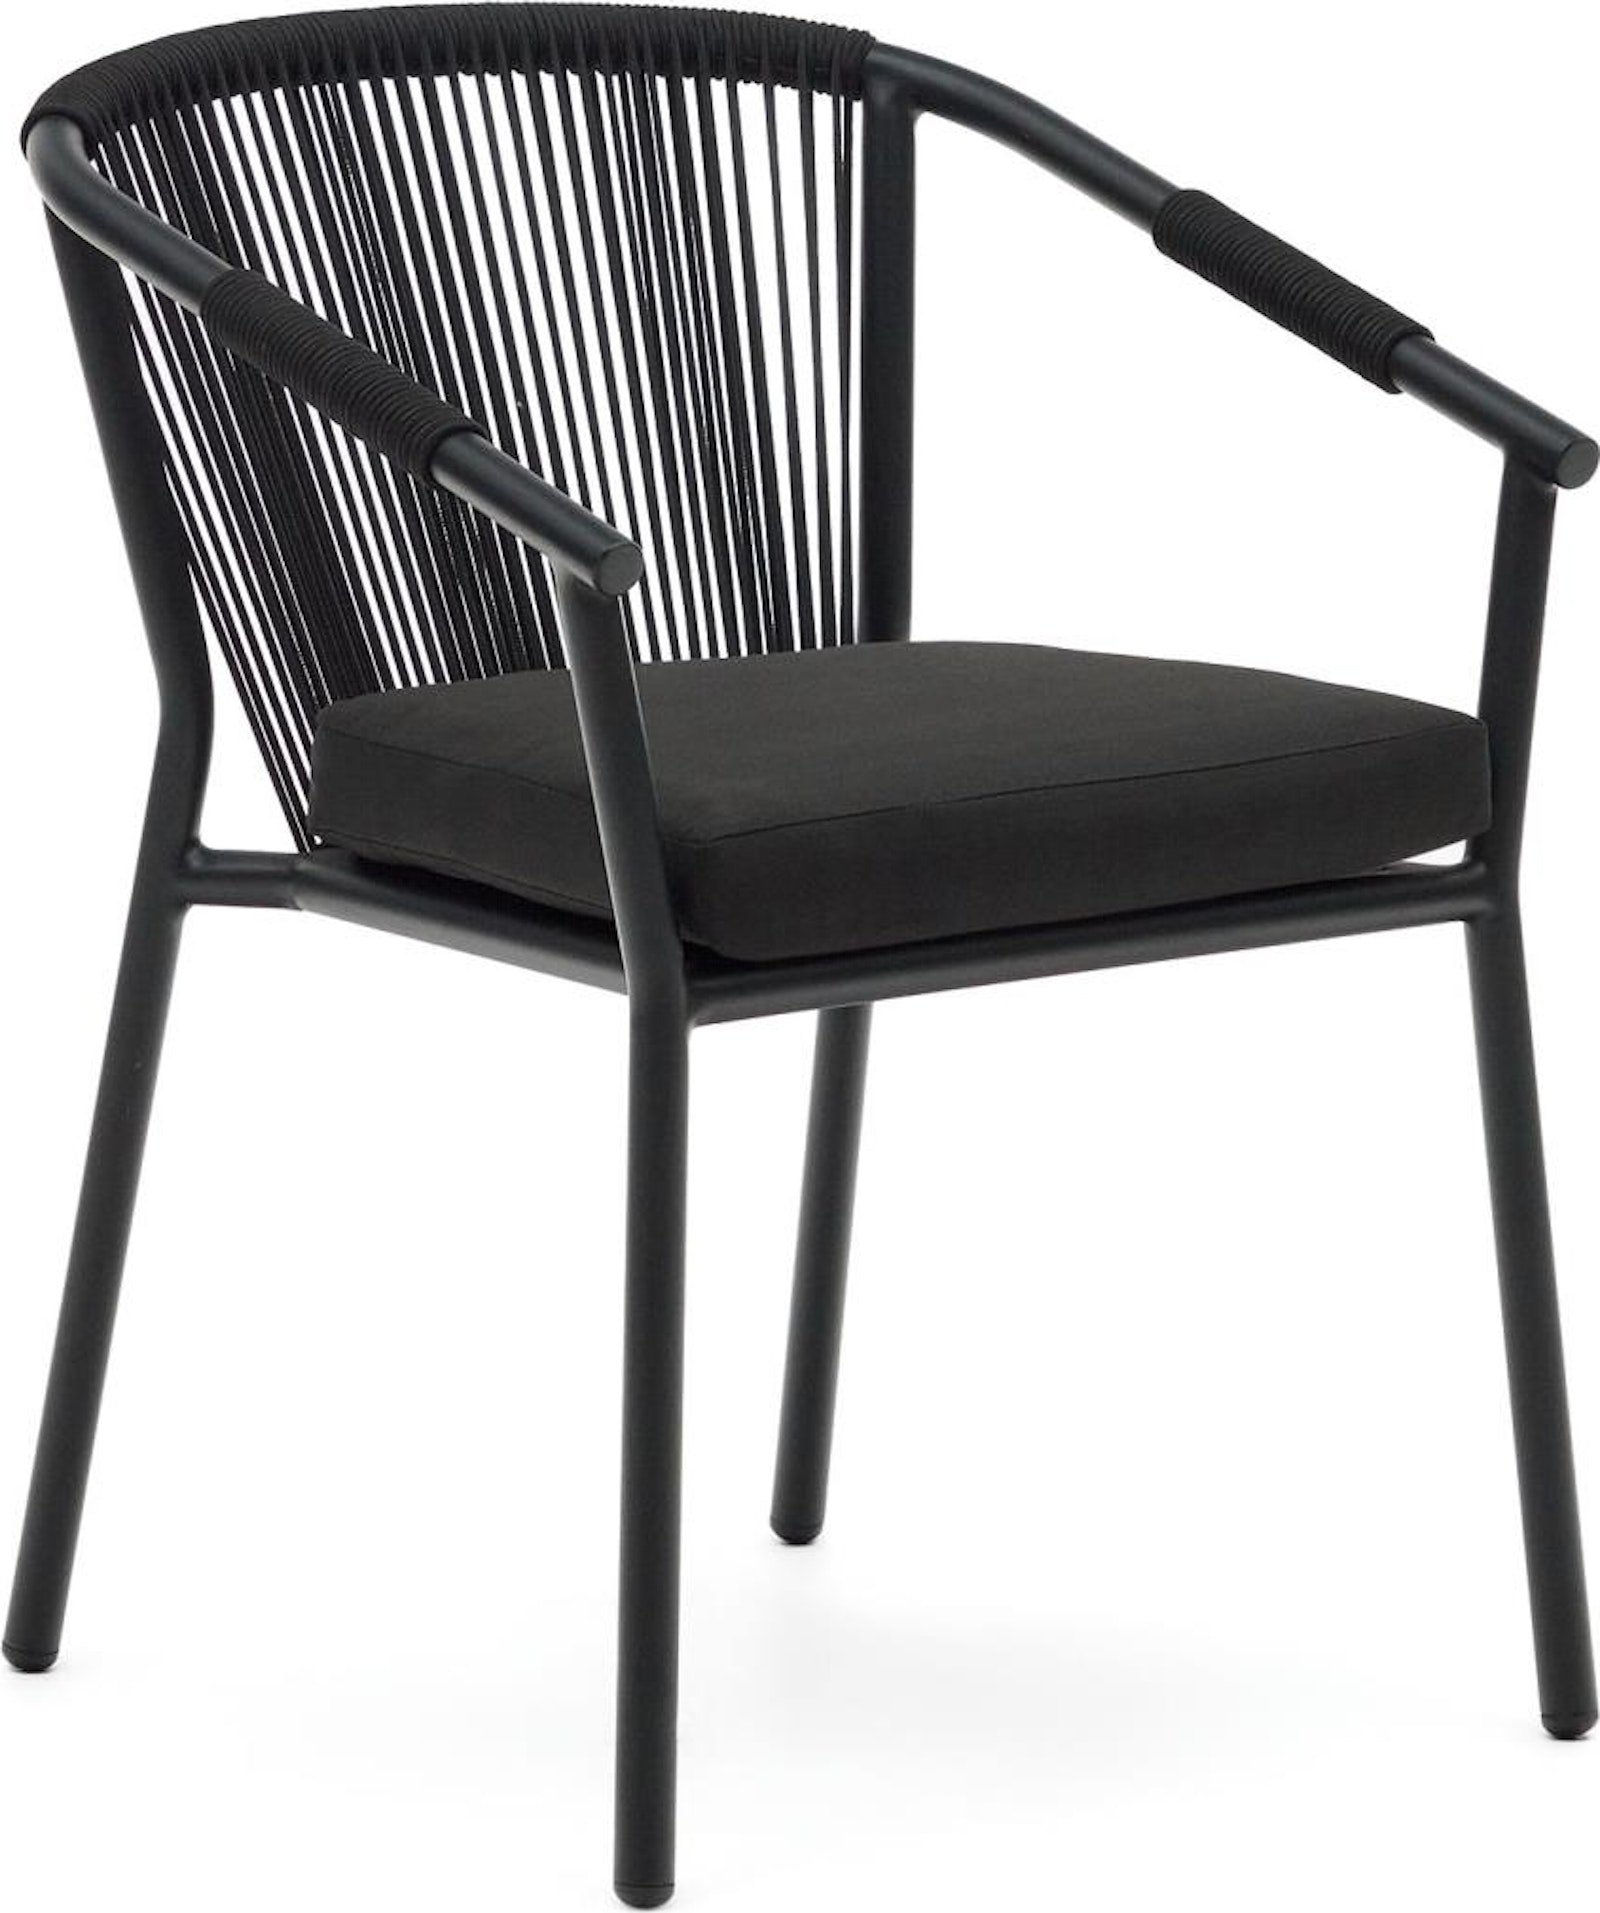 Xelida, Udendørs stol, nordisk, moderne, metal by Laforma (H: 79 cm. x B: 59 cm. x L: 63 cm., Sort)